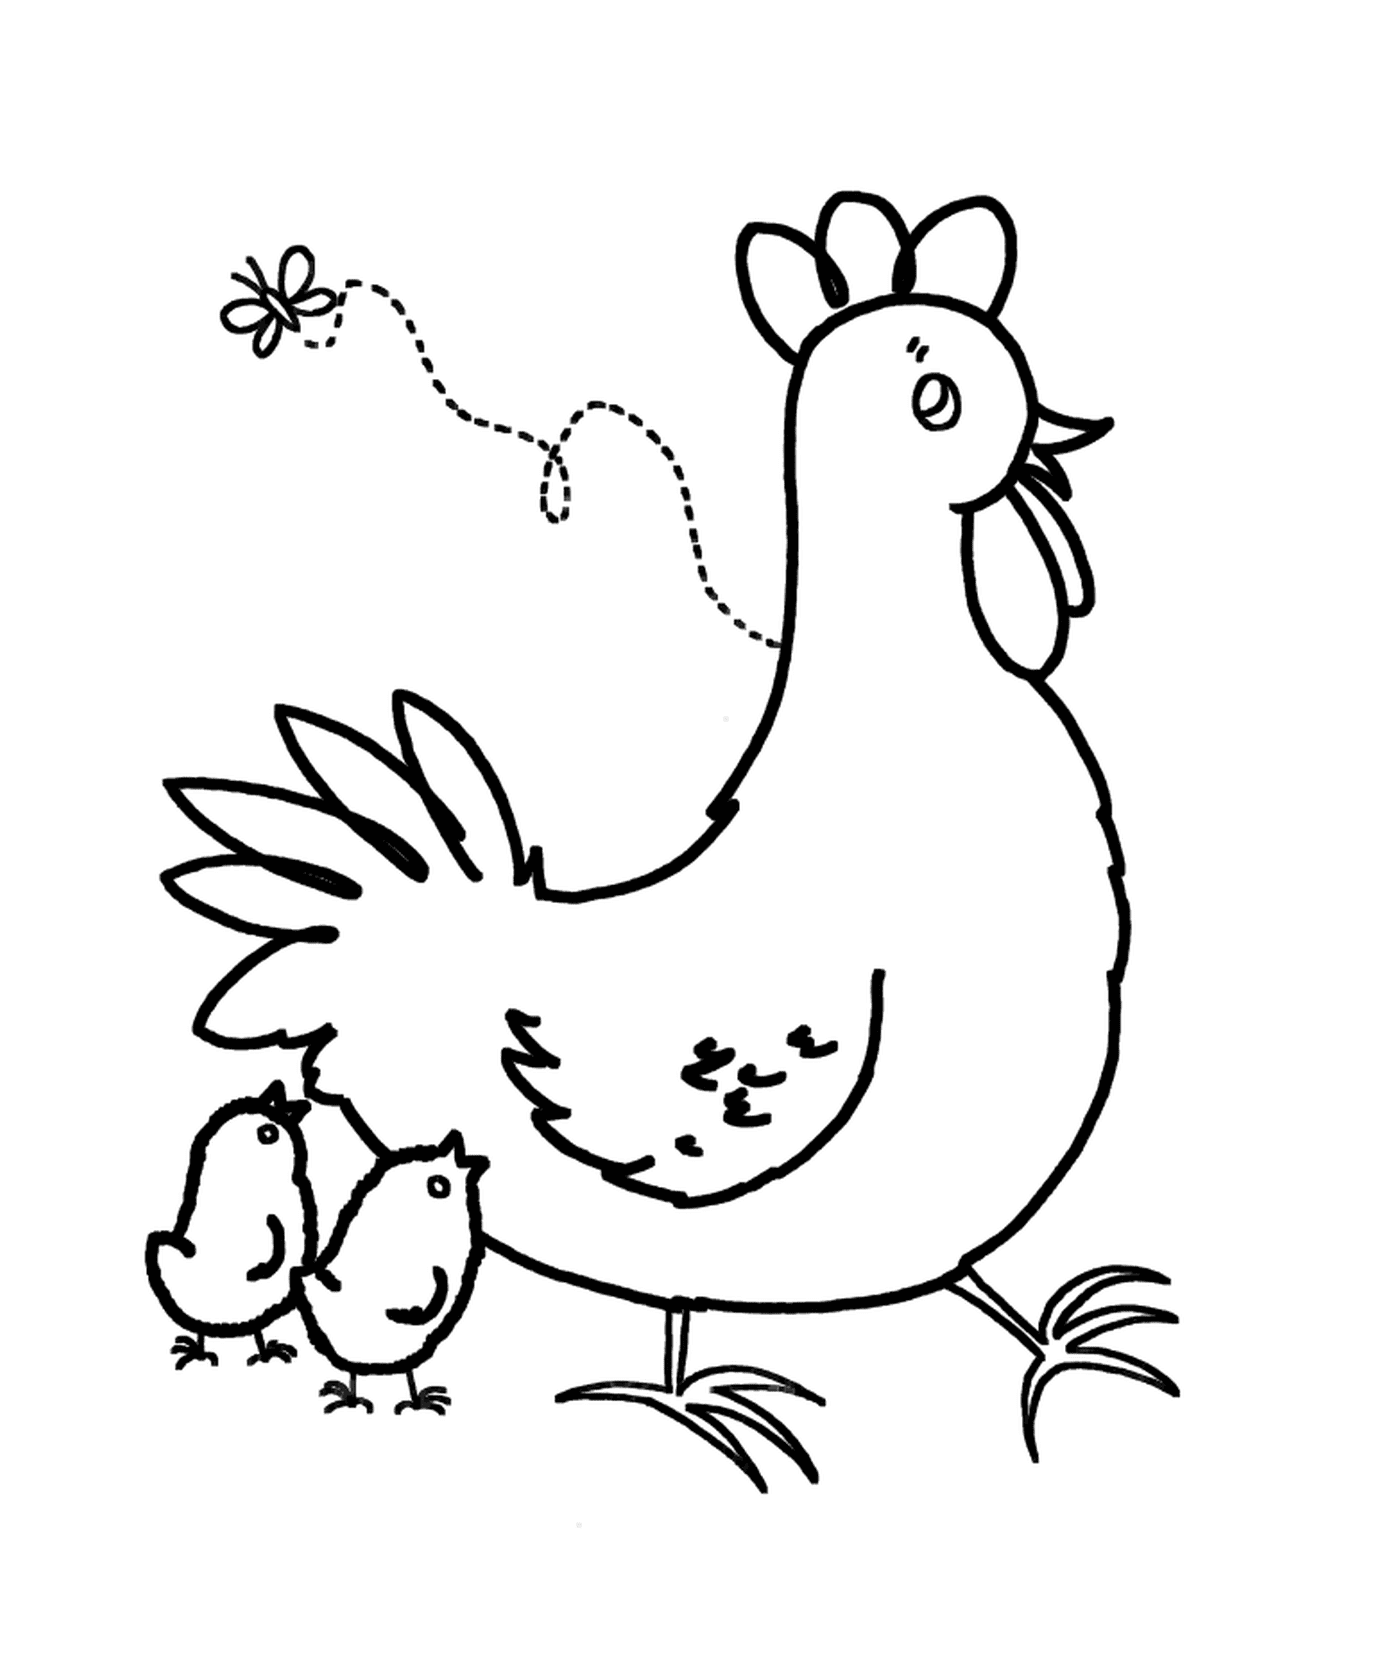  Pollo y pollito 